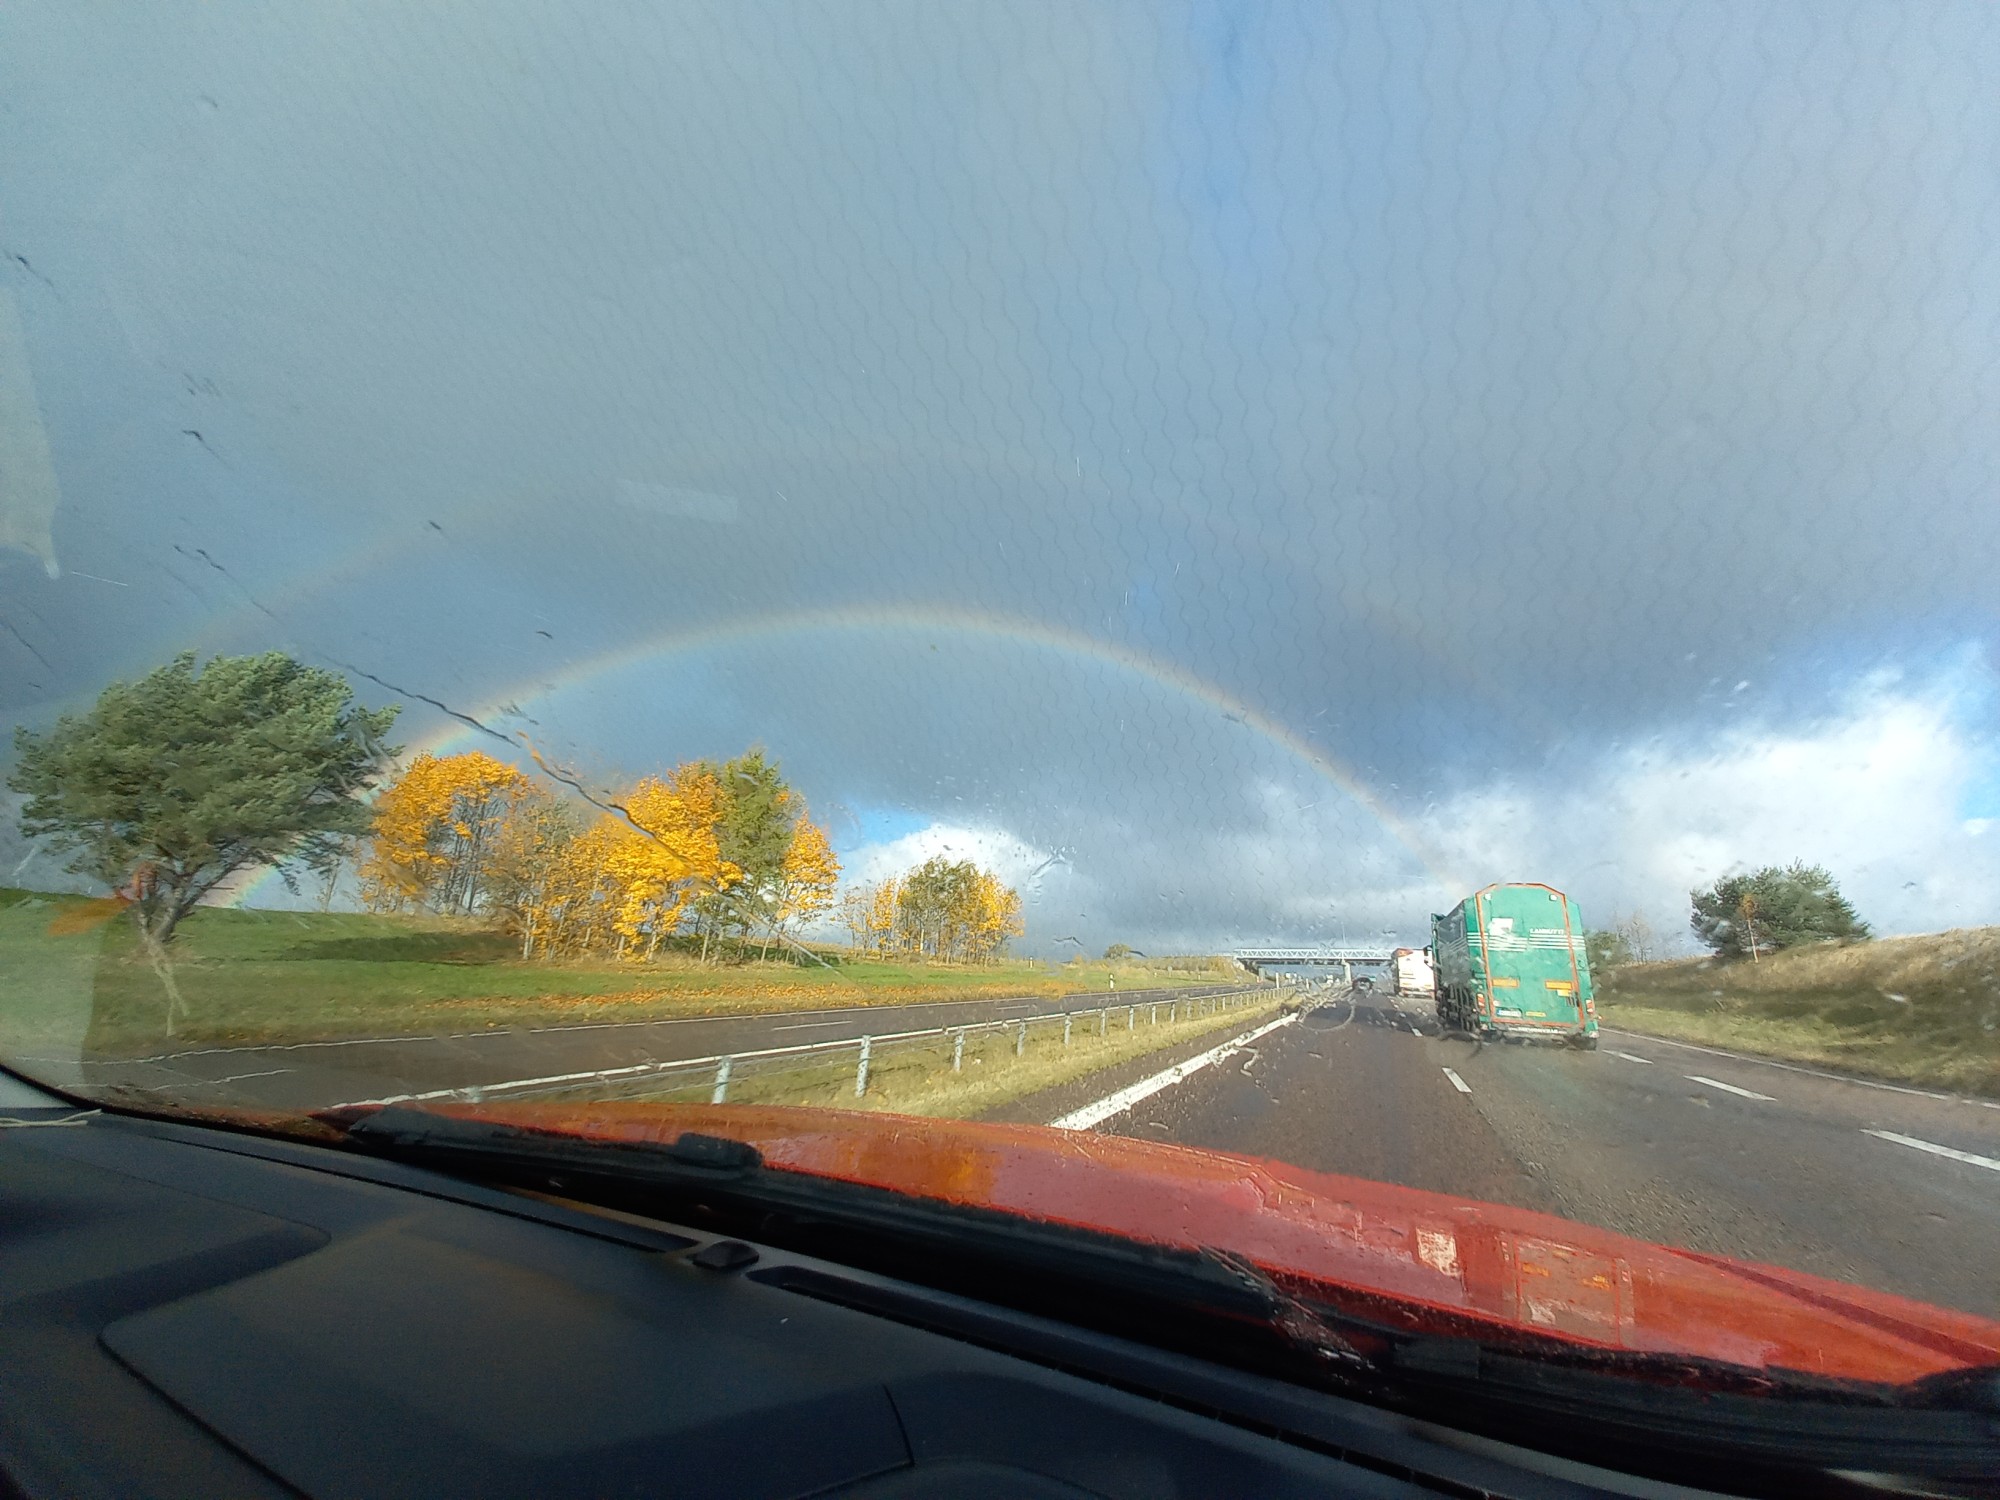 Regenbogen über der Autobahn